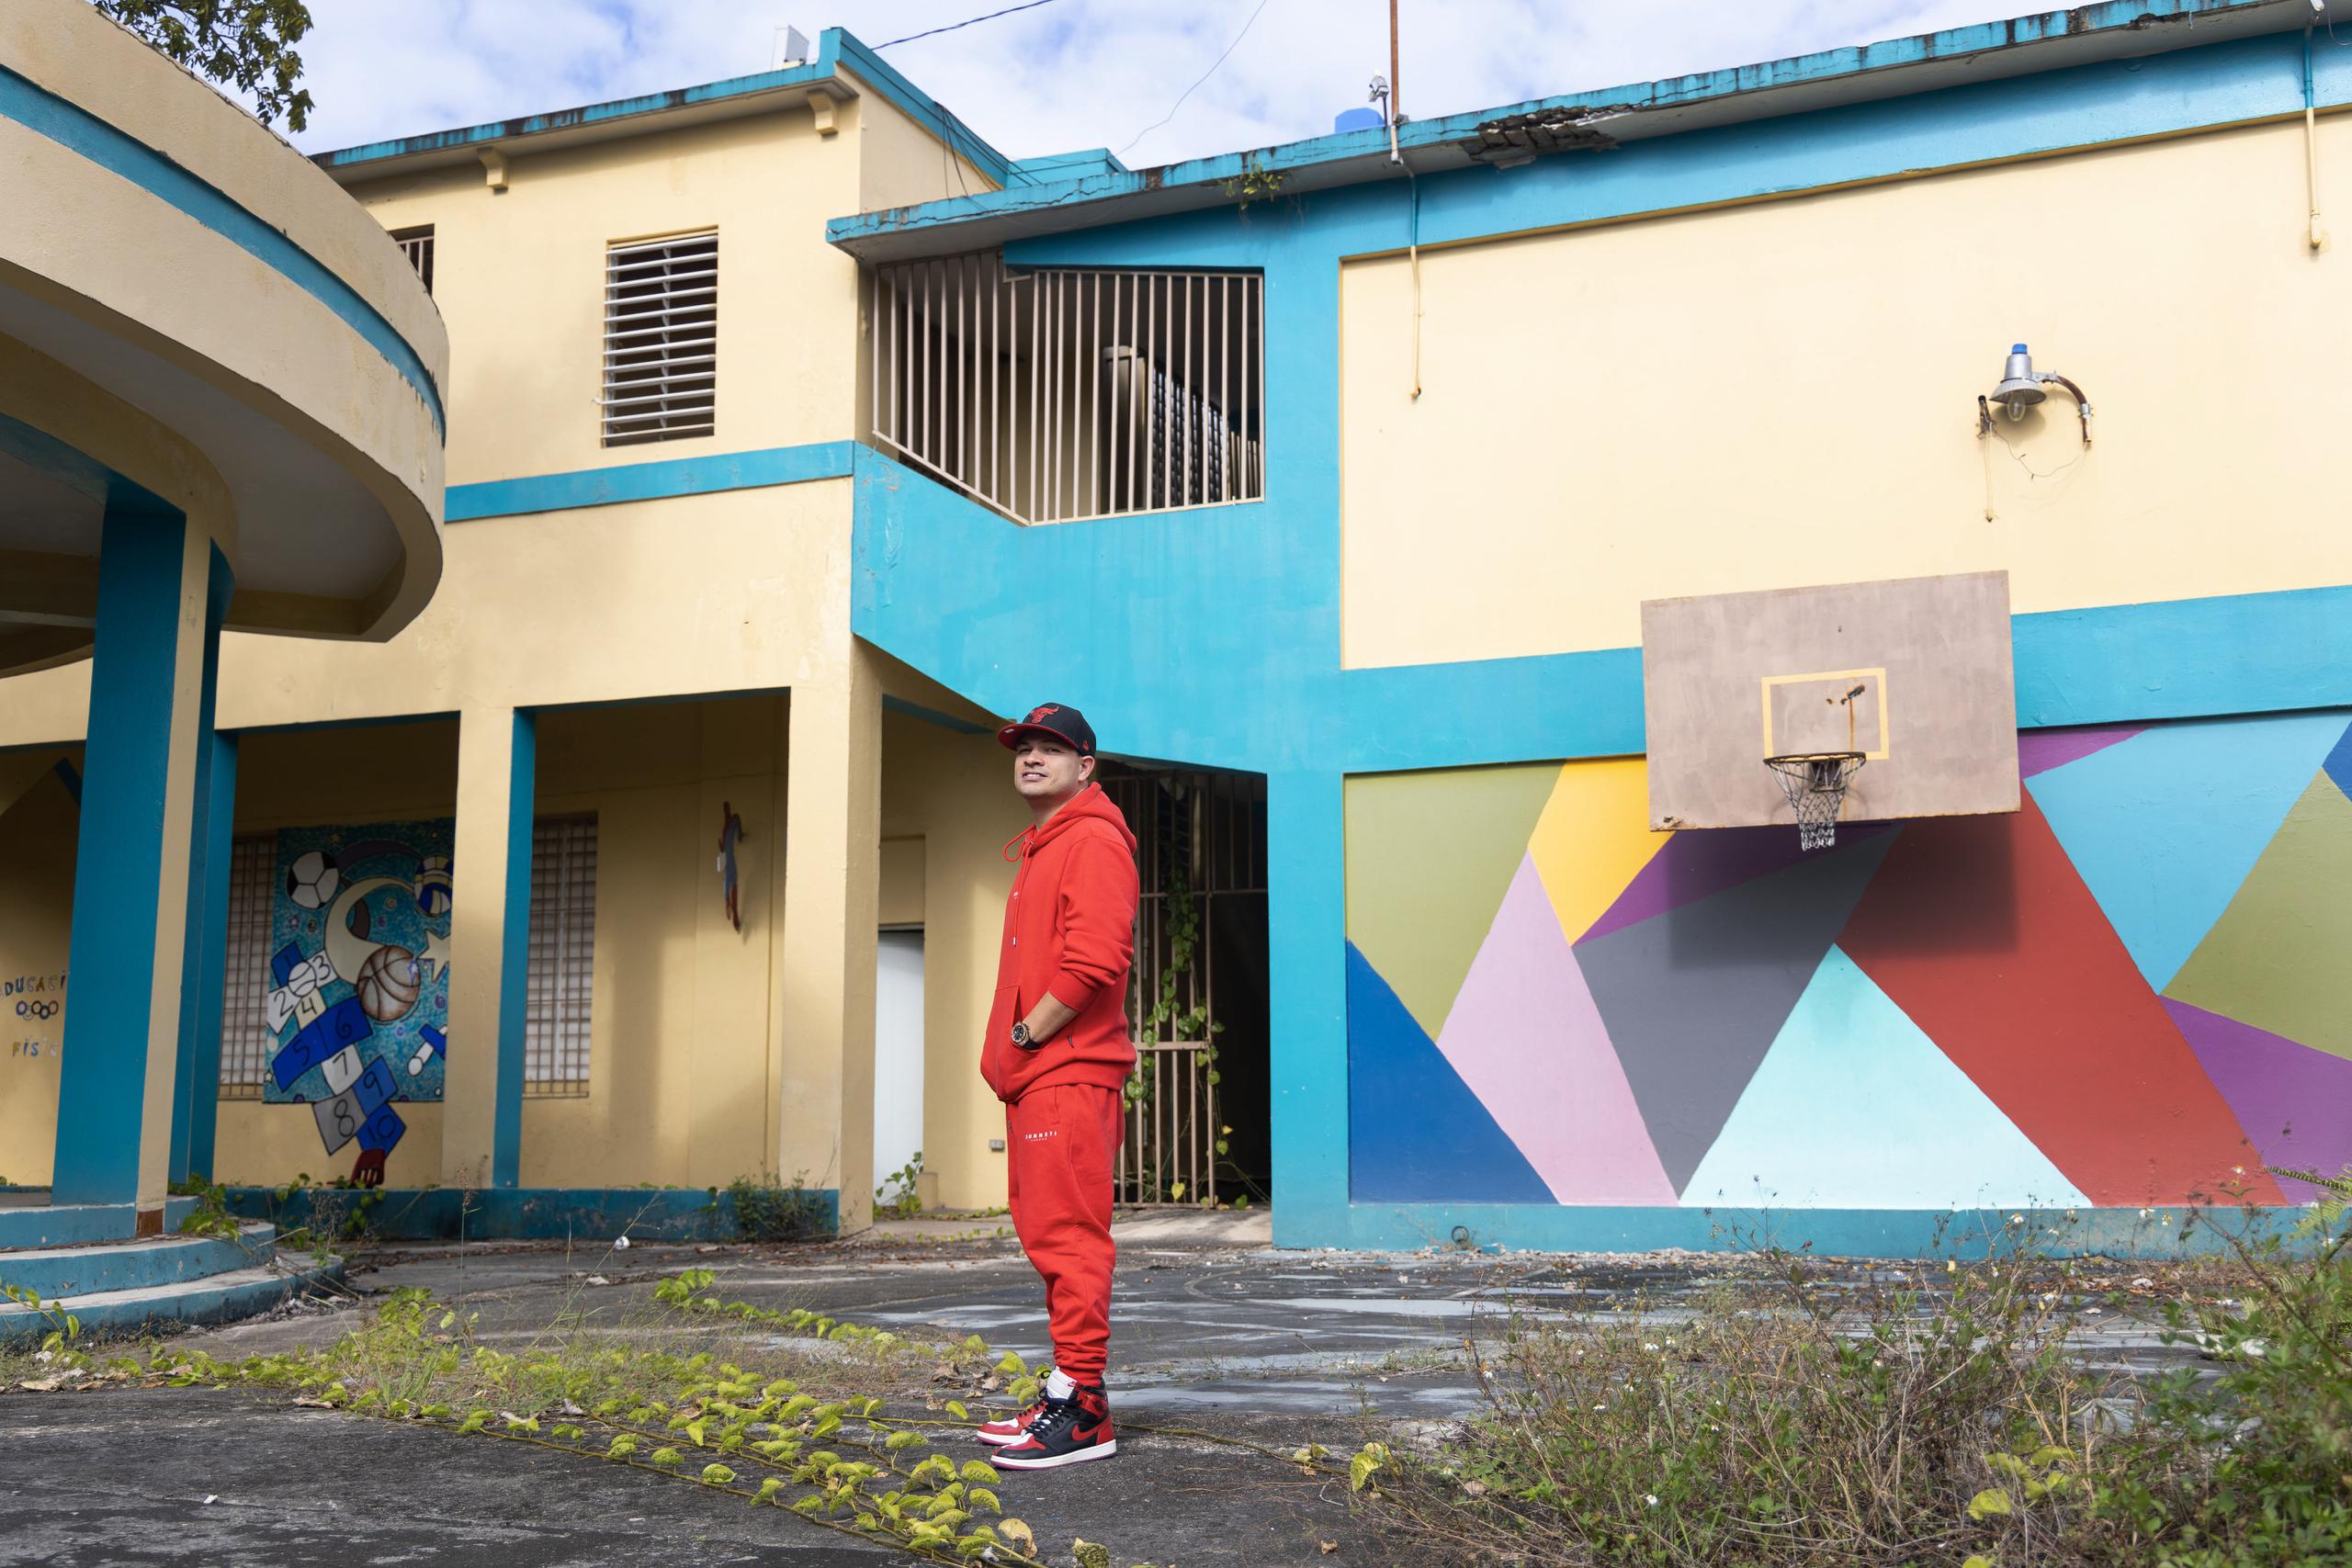 El artista urbano lamenta el deterioro de la escuela elemental Horace Mann, en Cataño, que forma parte de la larga lista de planteles escolares que cerró hace unos años por iniciativa del Departamento de Educación.